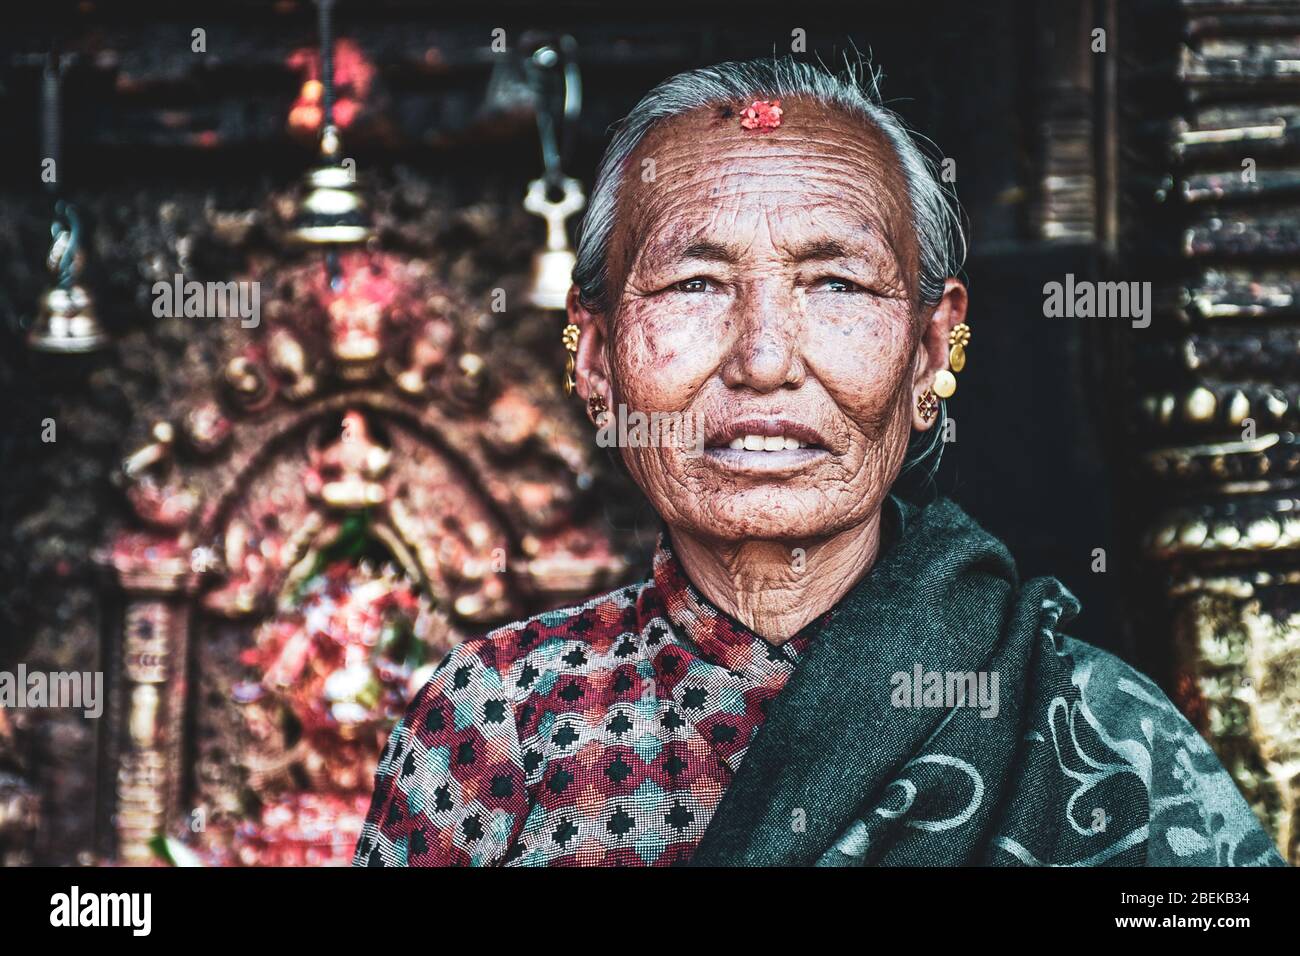 Kathmandu, street portraits Stock Photo